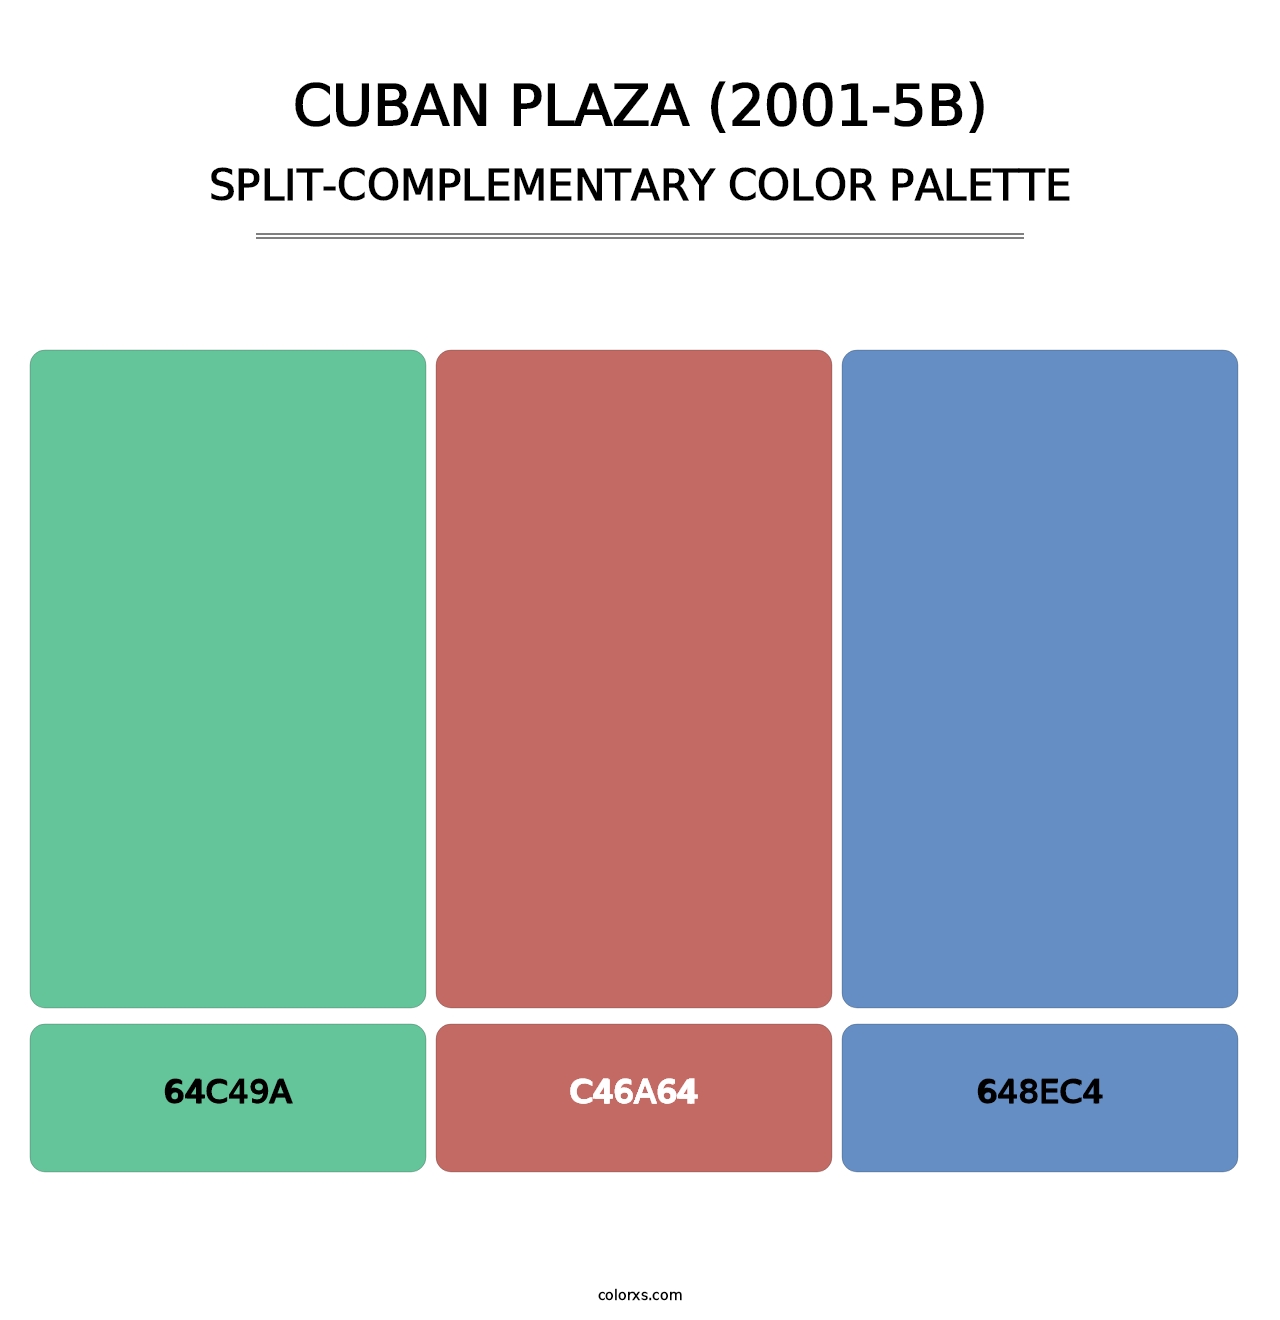 Cuban Plaza (2001-5B) - Split-Complementary Color Palette